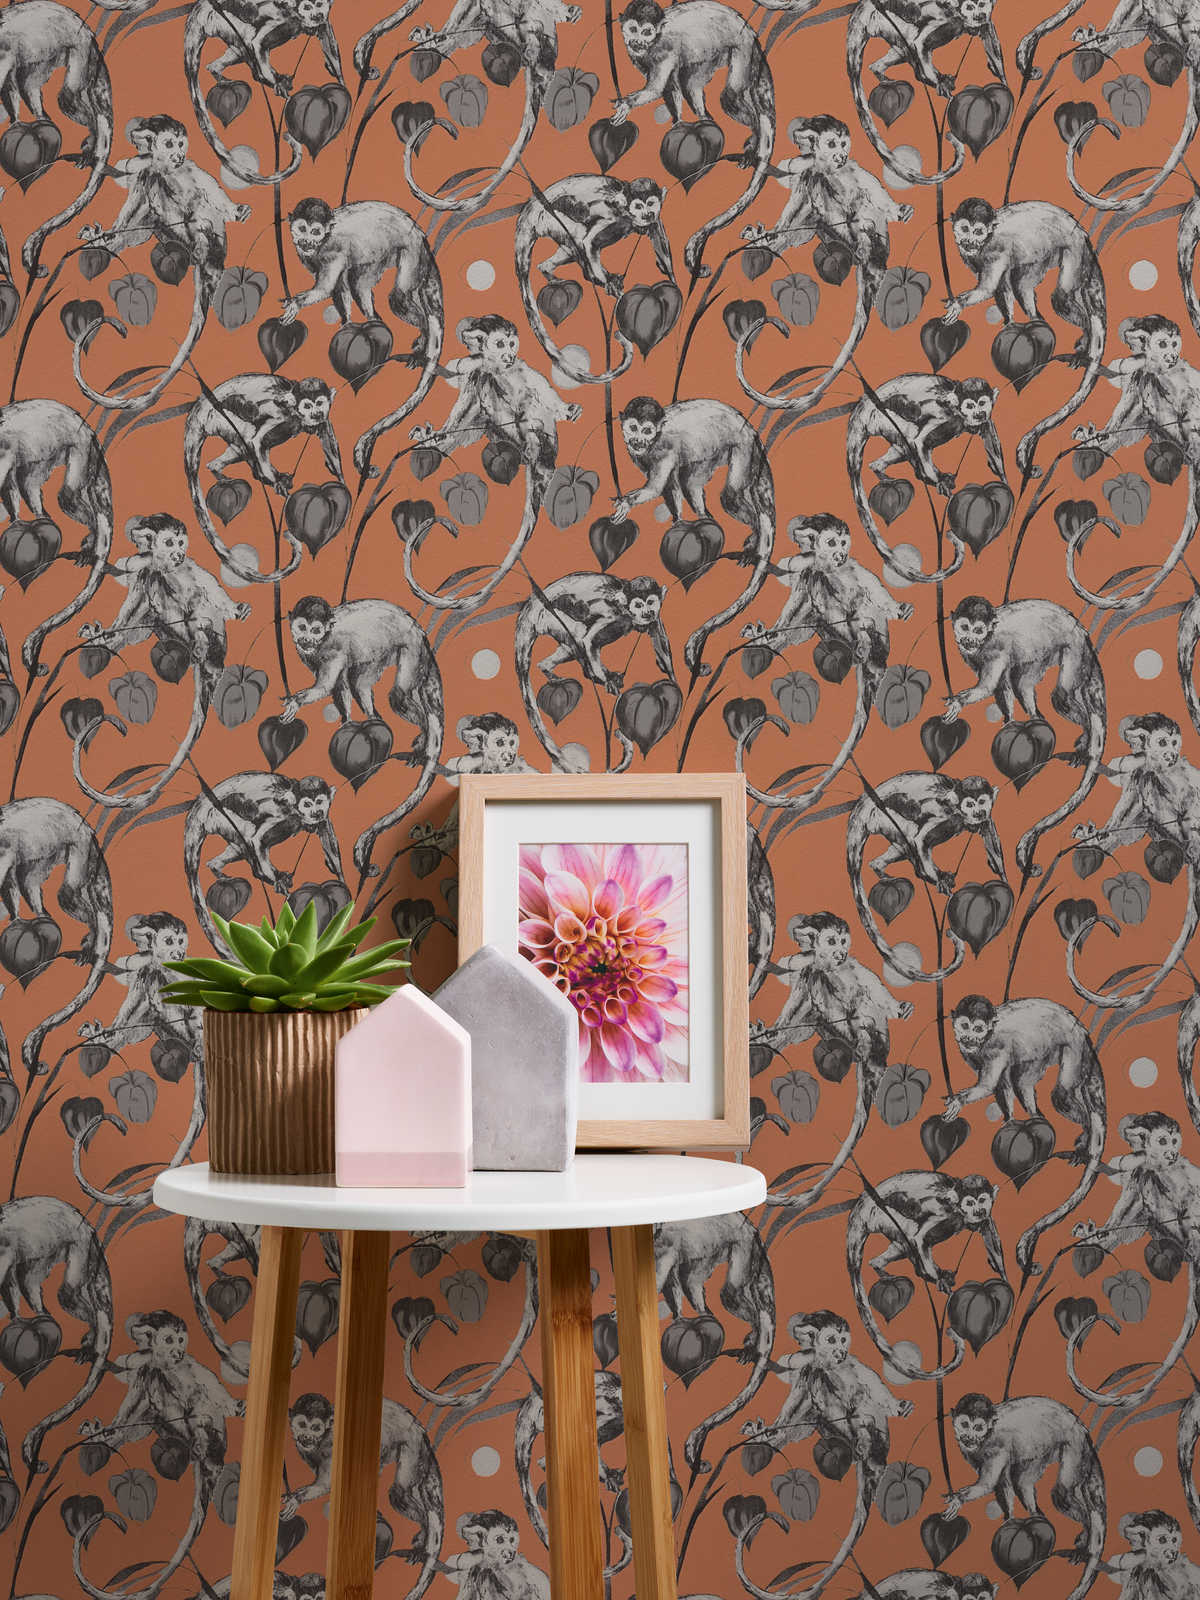             MICHALSKY papier peint singe & jungle motif - orange, gris
        